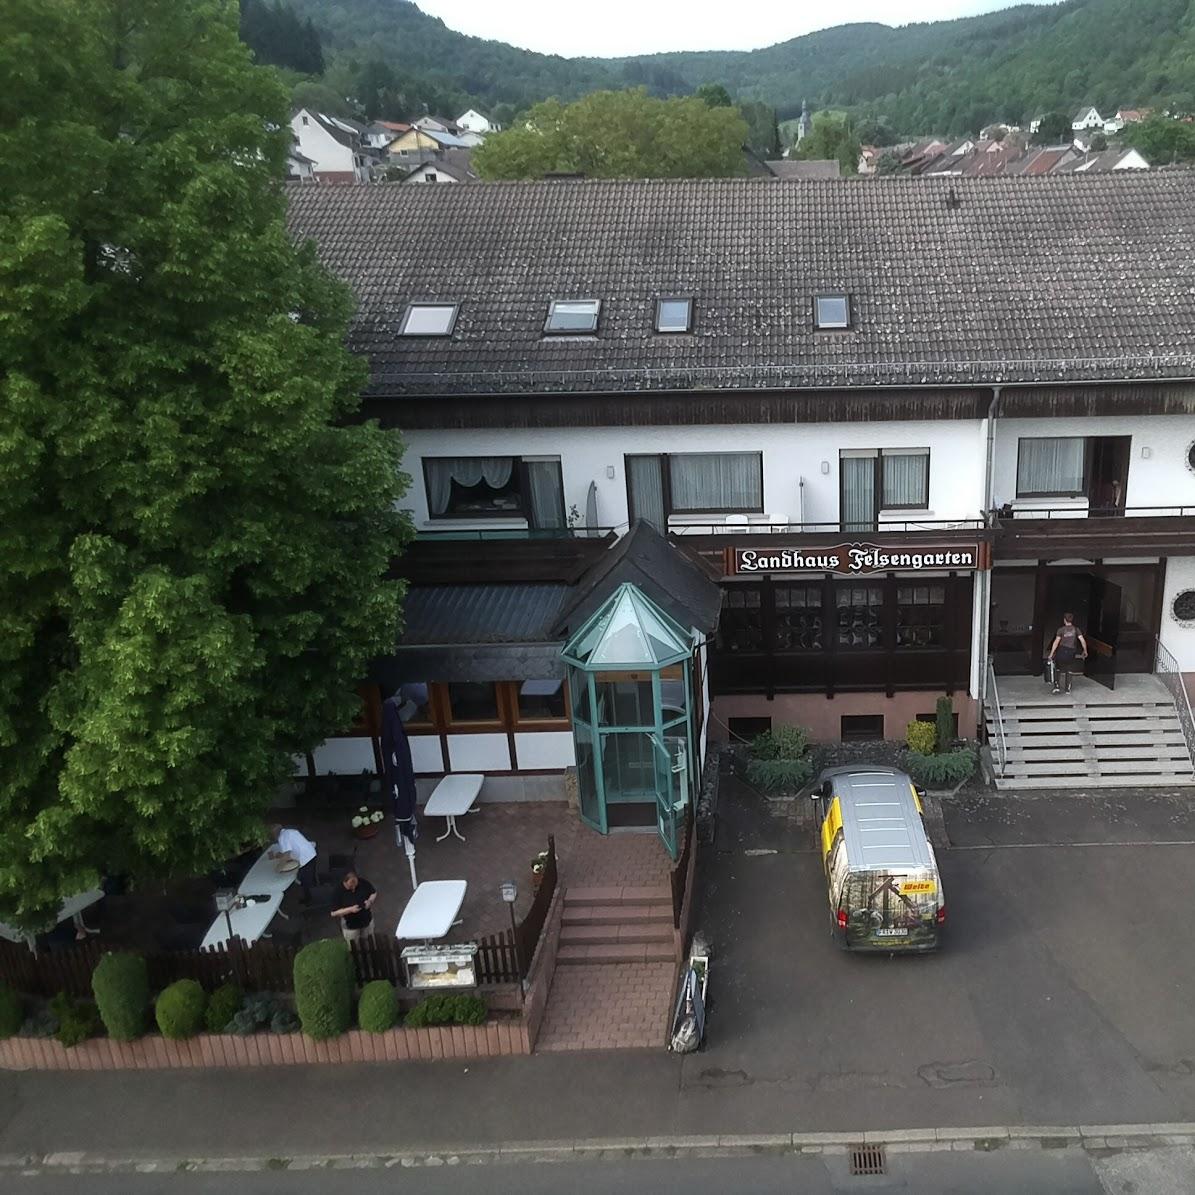 Restaurant "Landhaus Felsengarten" in  Simmertal